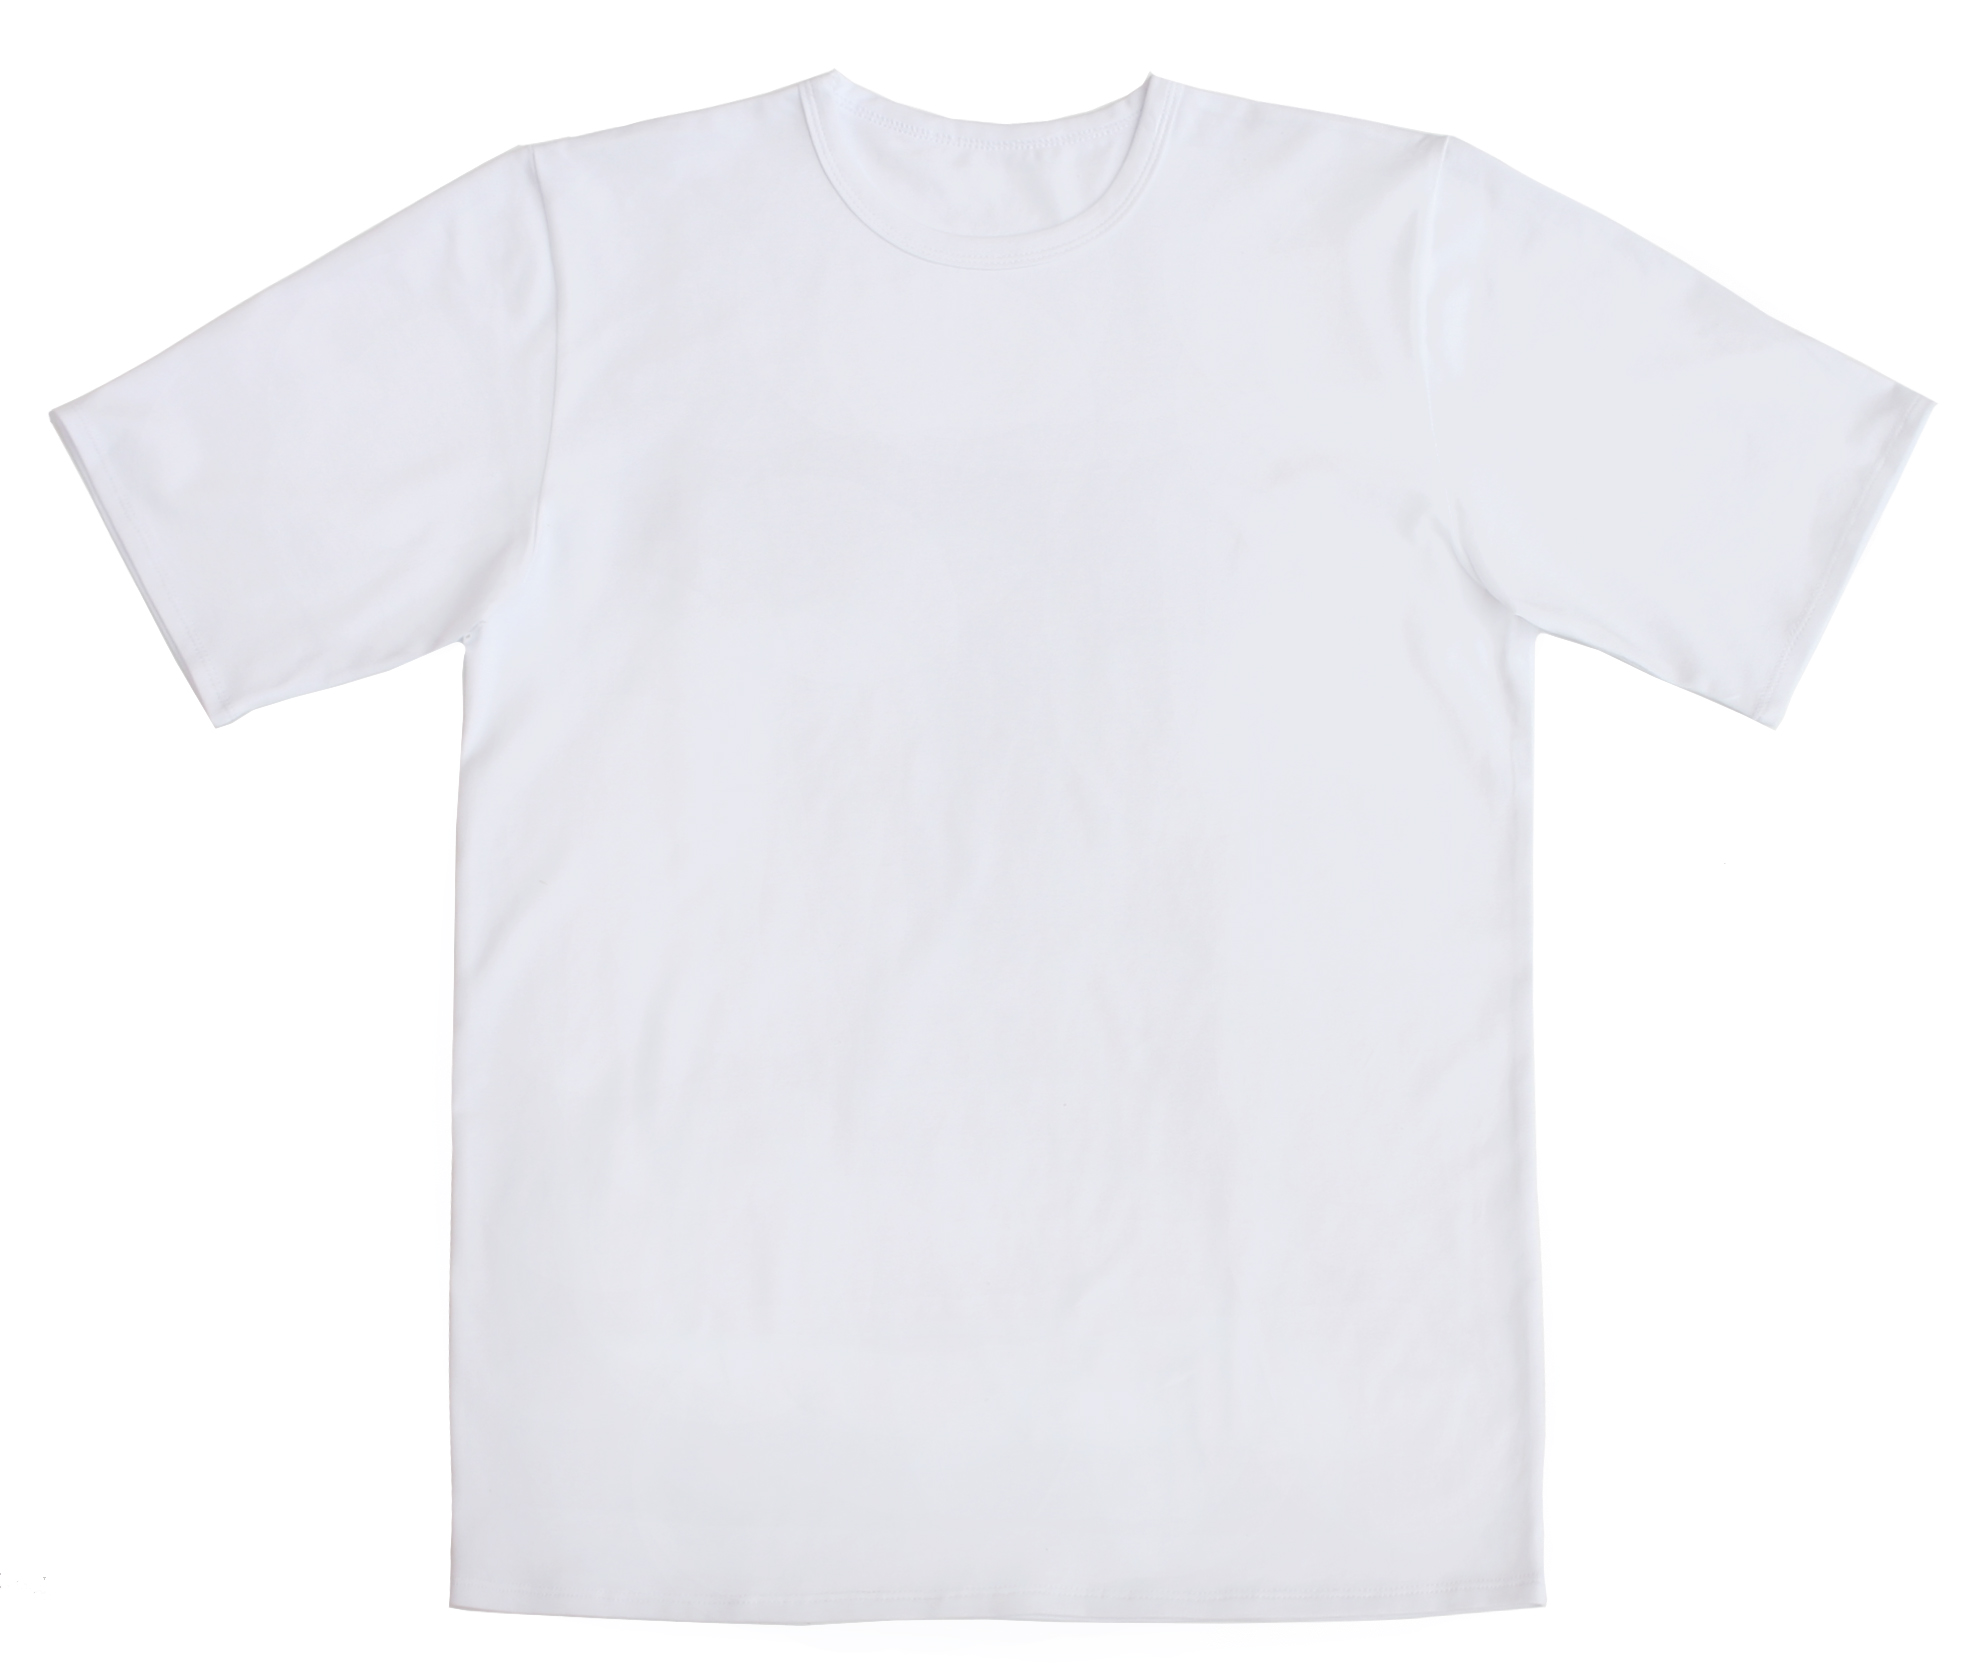 Белая детская футболка купить. Белая футболка. Белая футболка на белом фоне. Белая футболка без рисунка. Белая футболка без фона.